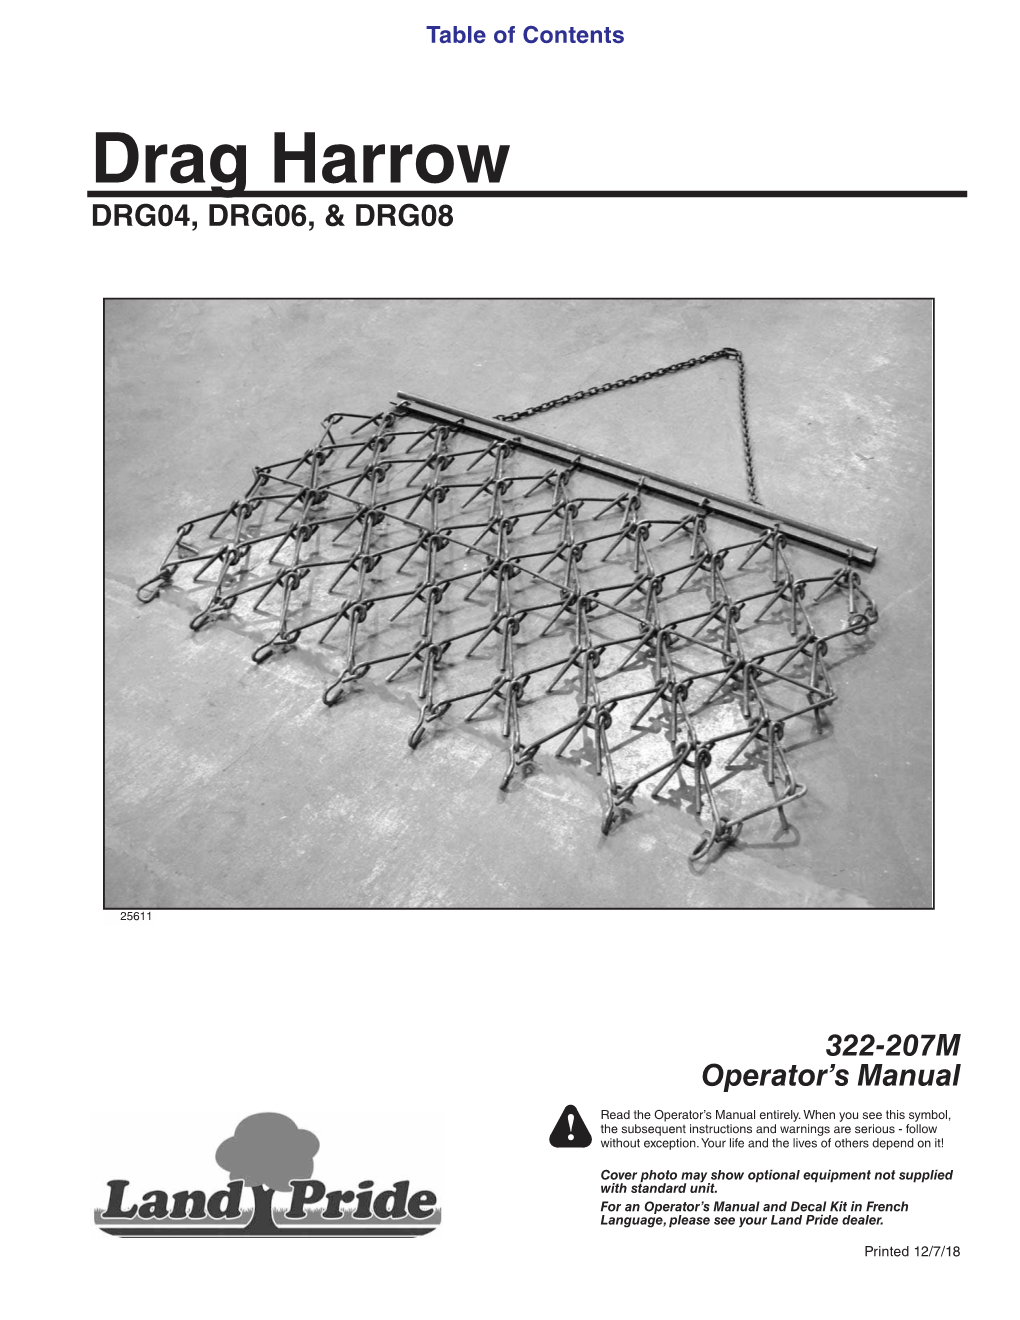 Drag Harrow DRG04, DRG06, & DRG08